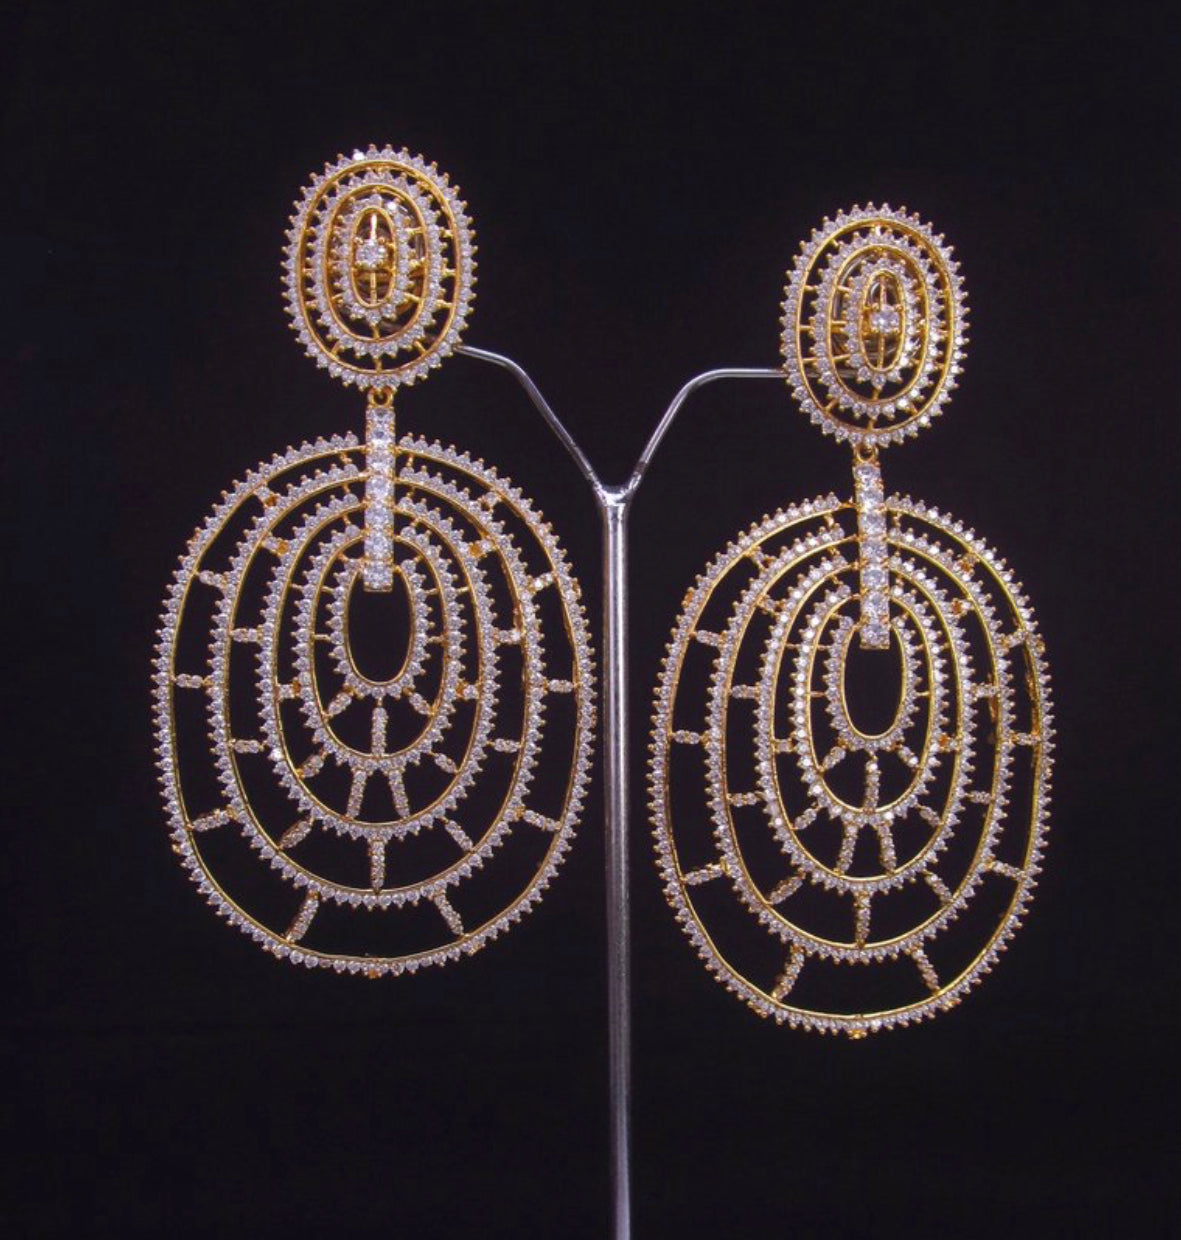 The Anya earrings